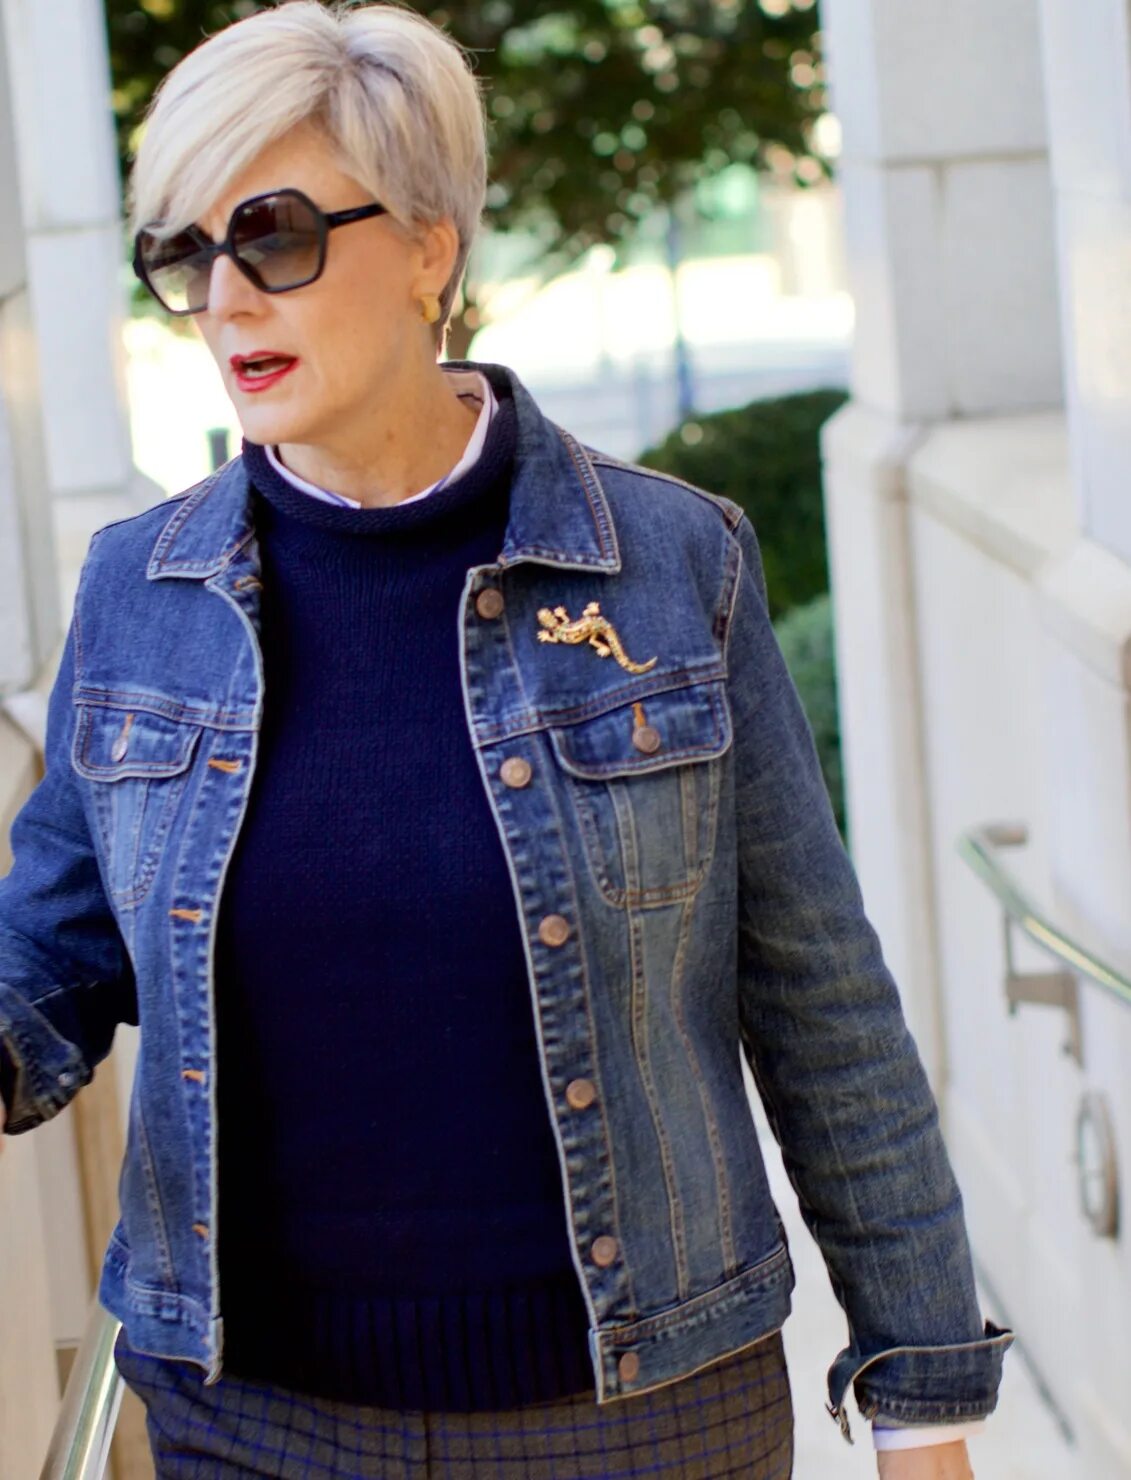 Куртки женские 50 лет. Джинсовая куртка женская. Джинсовые куртки для женщин после 50 лет. Джинсовые куртки женские 50 лет. Короткая джинсовка для полных женщин.